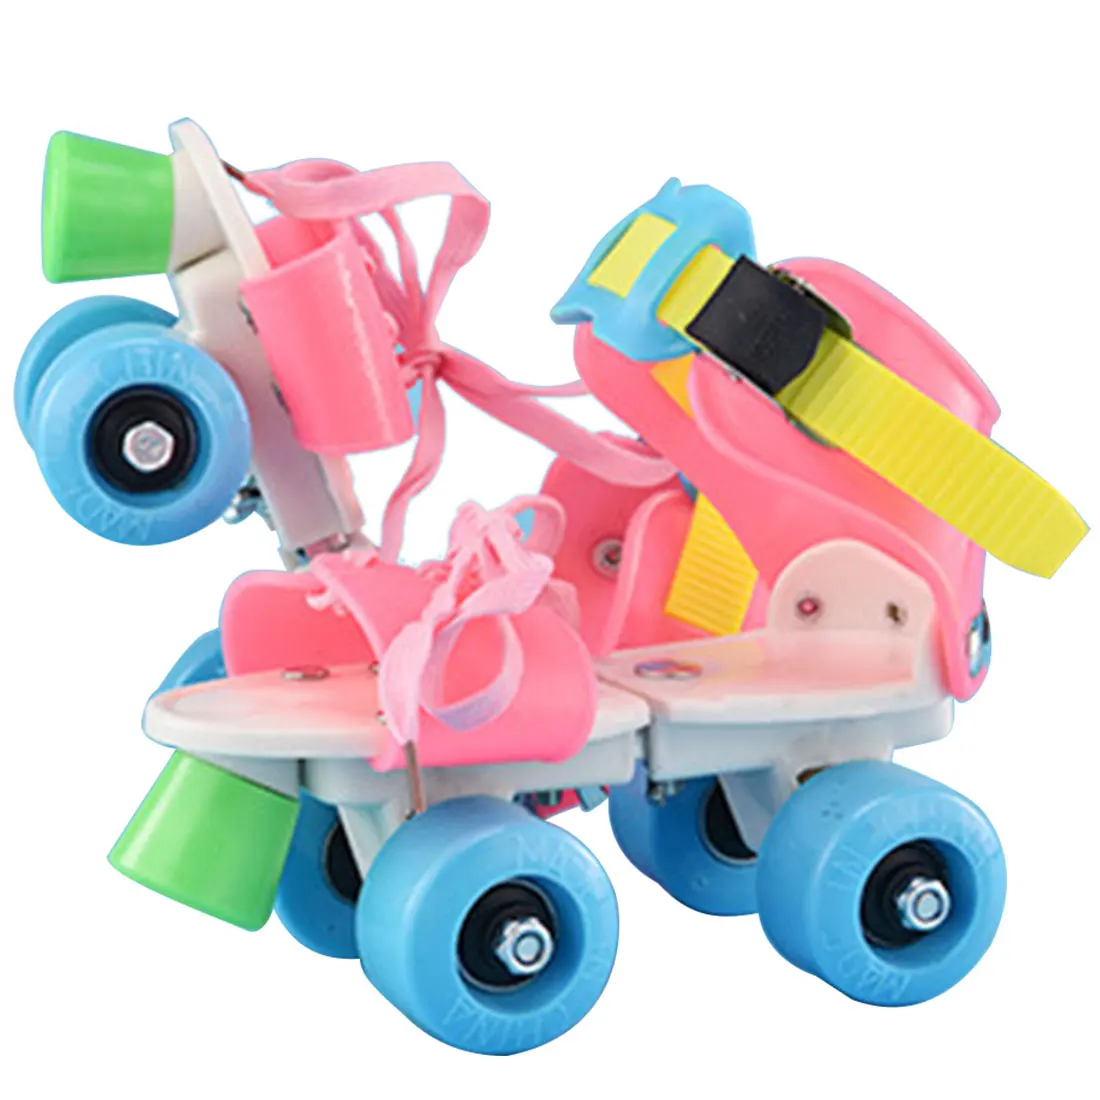 Детские роликовые коньки двухрядные 4 колеса регулируемый размер катания обувь раздвижные Инлайн ролики для слалома детские подарки